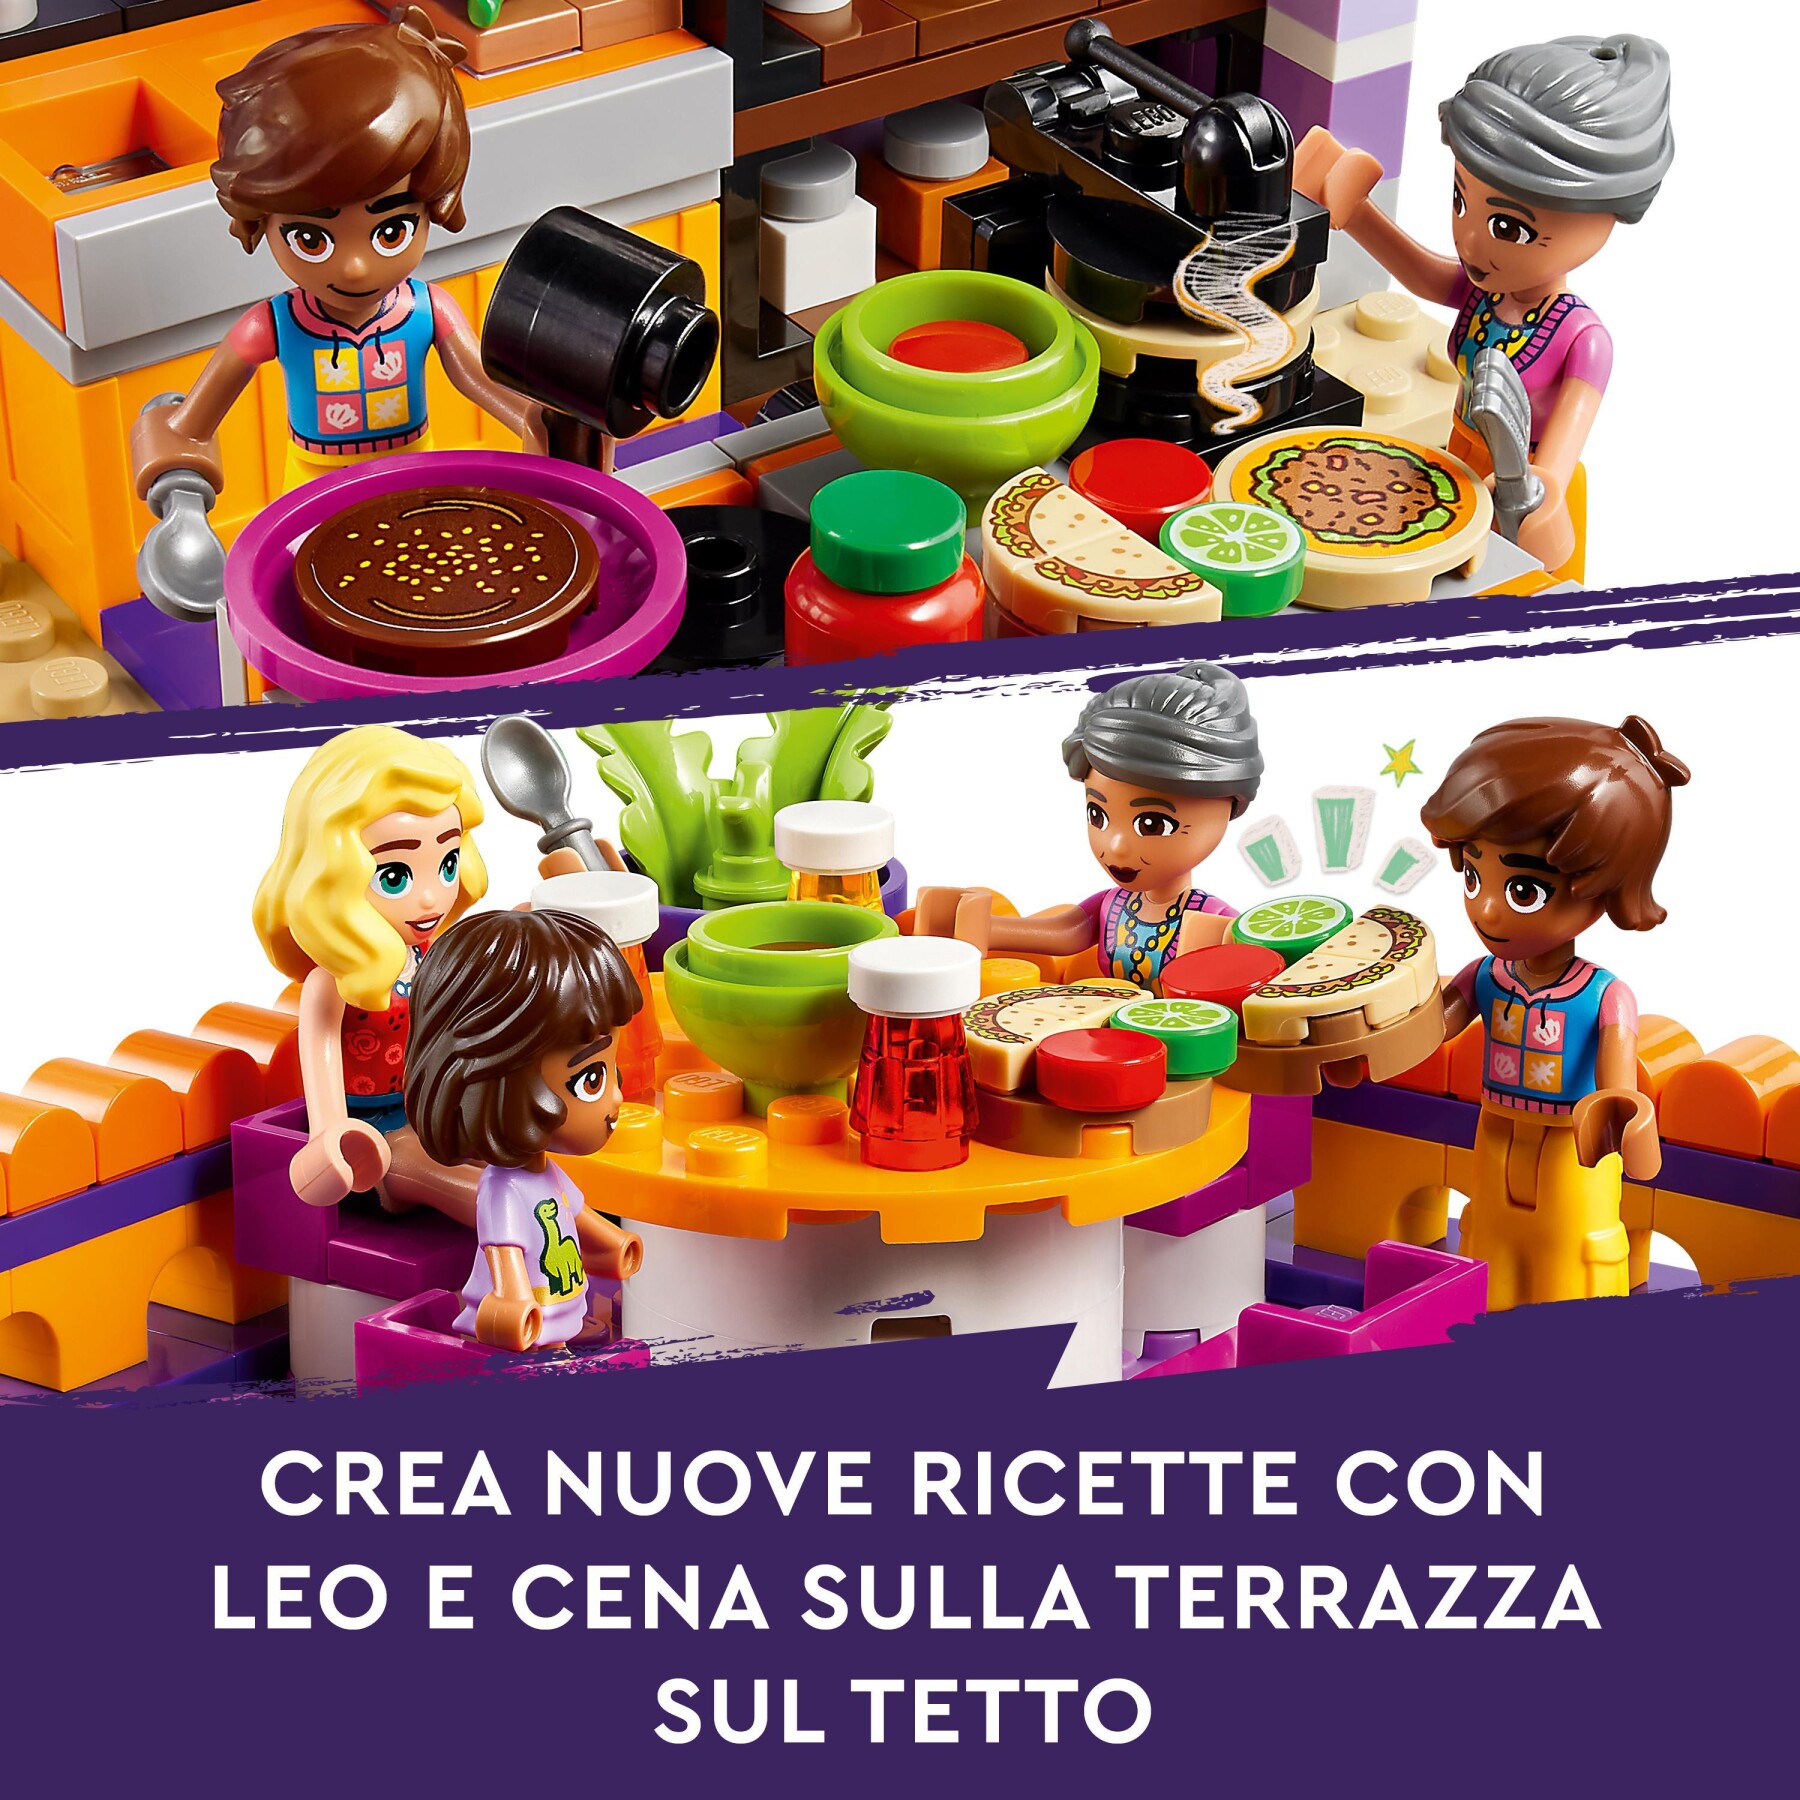 Lego friends 41747 cucina comunitaria di heartlake city con accessori giocattolo, compatibile con centro comunitario (41748) - LEGO FRIENDS